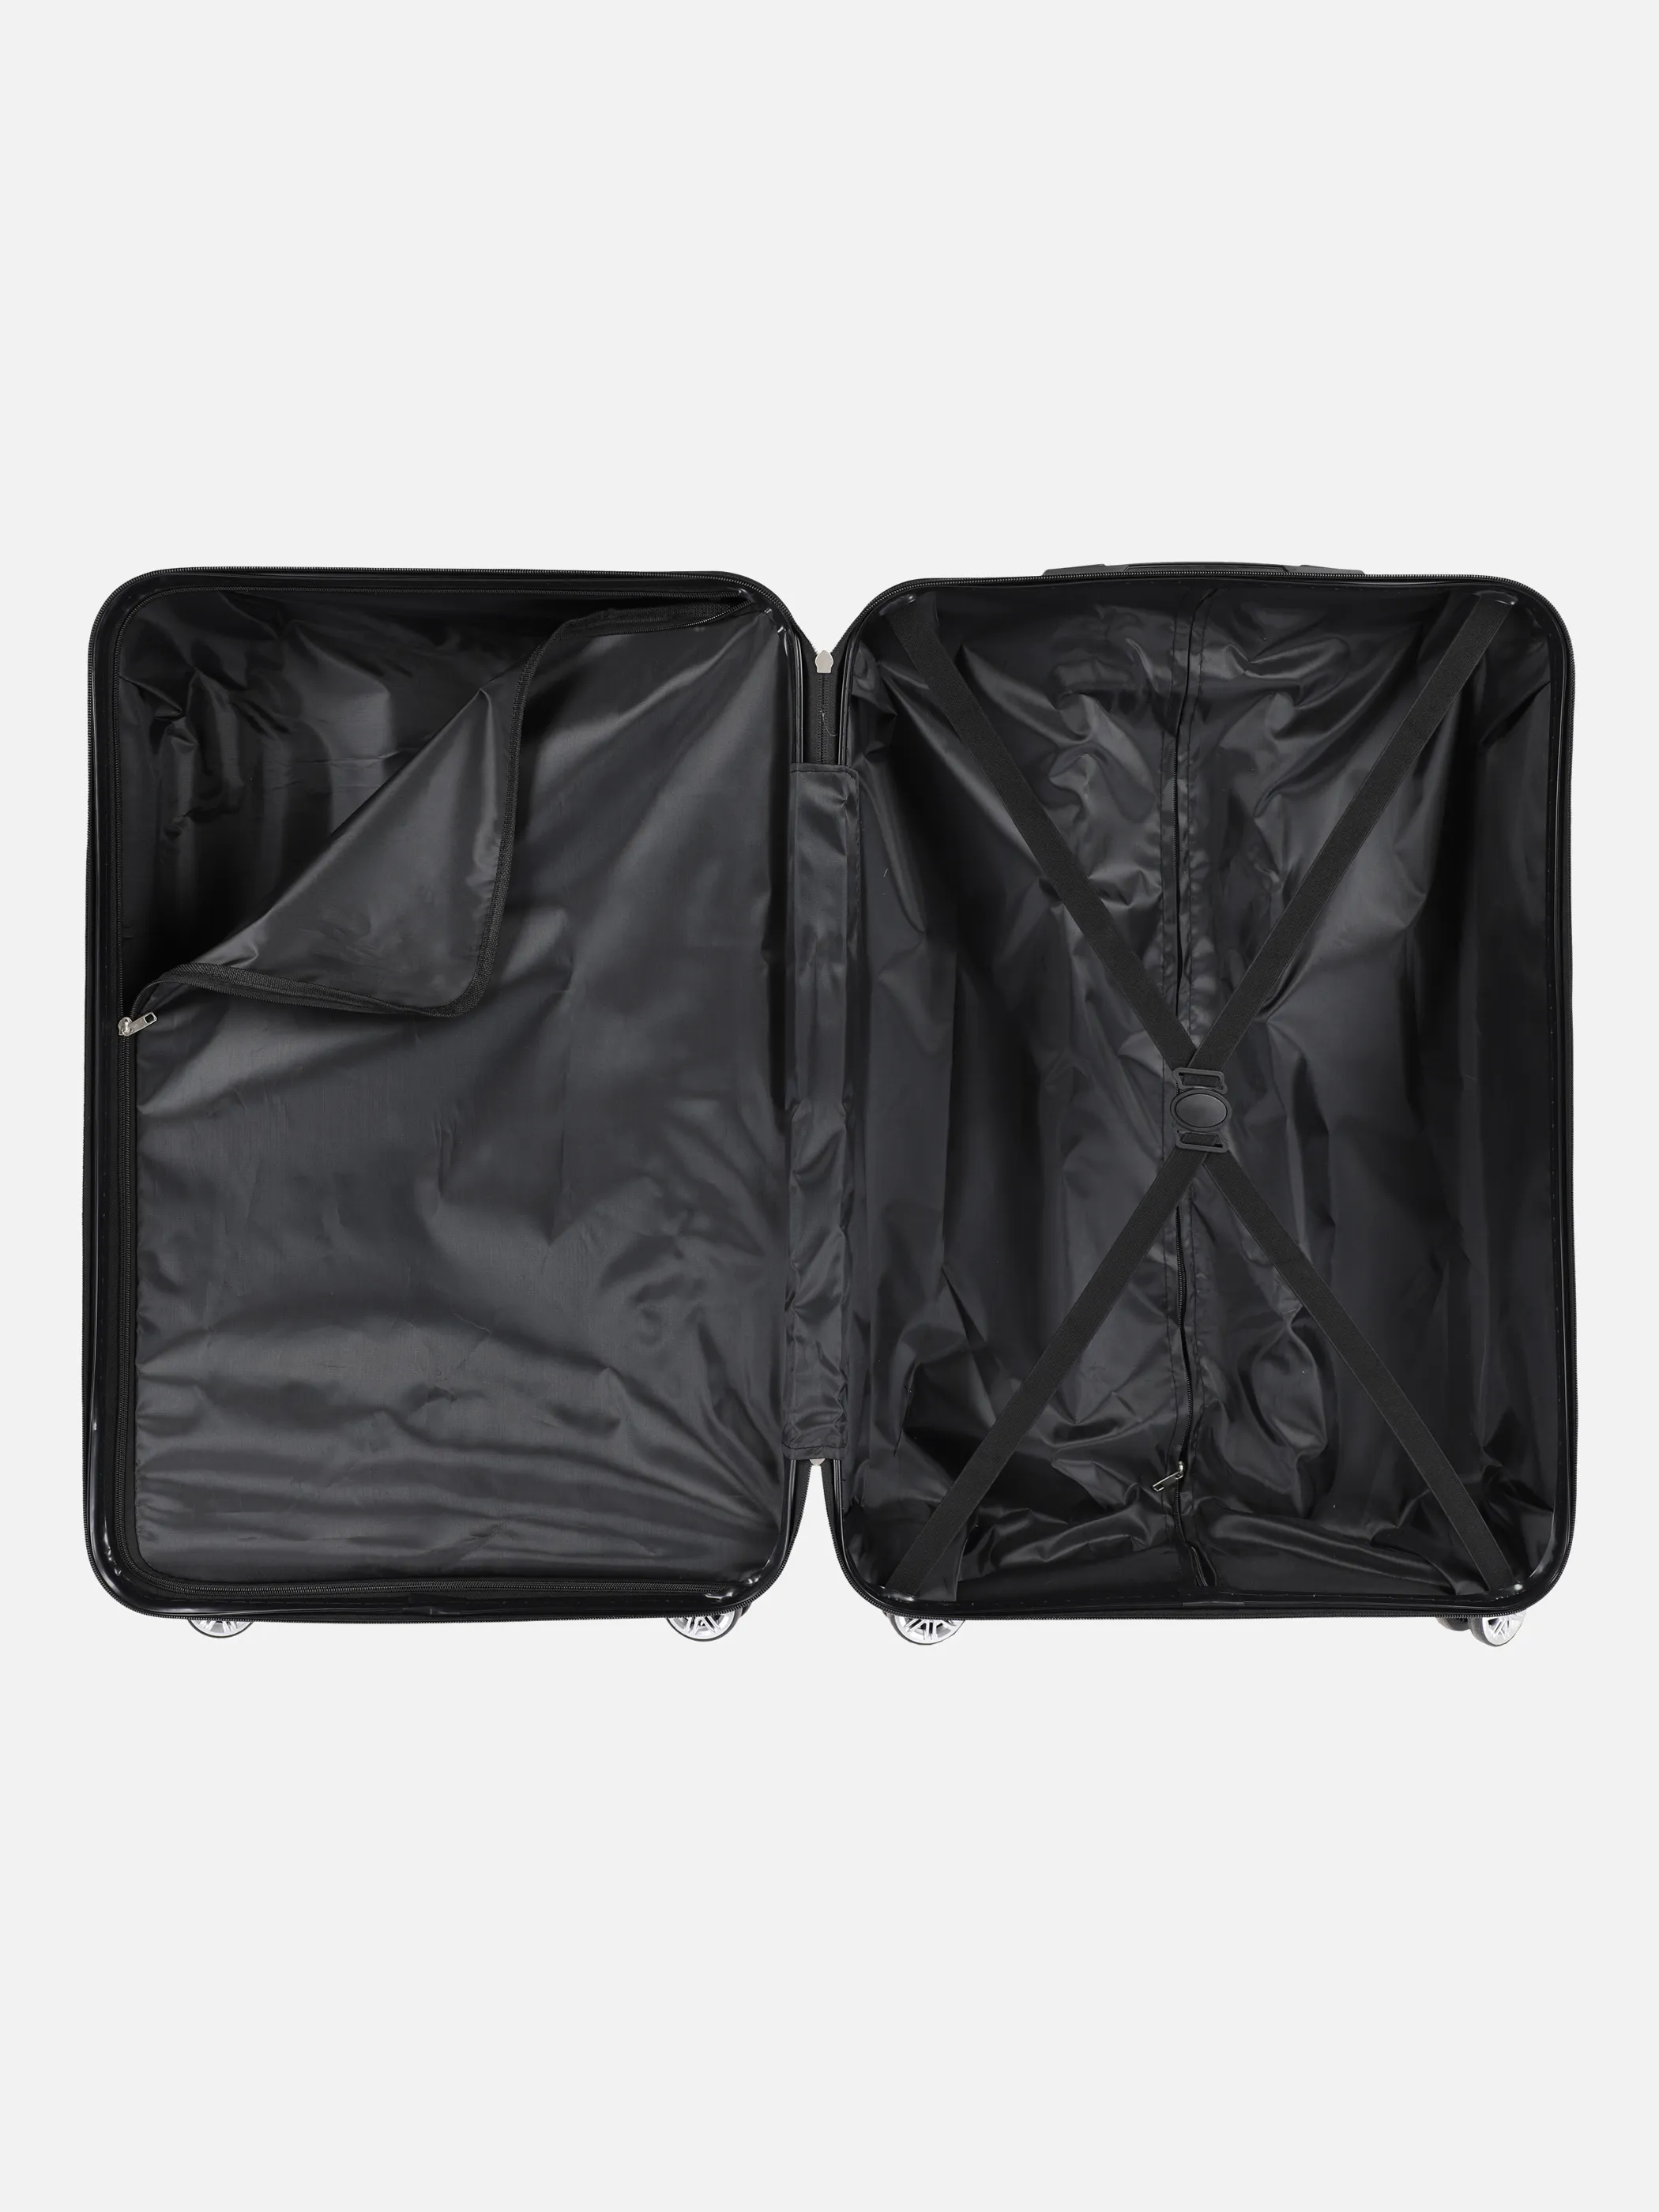 Koffer/Taschen Koffer Avalon S 55x40x22 Grau 884546 ANTHRA 3